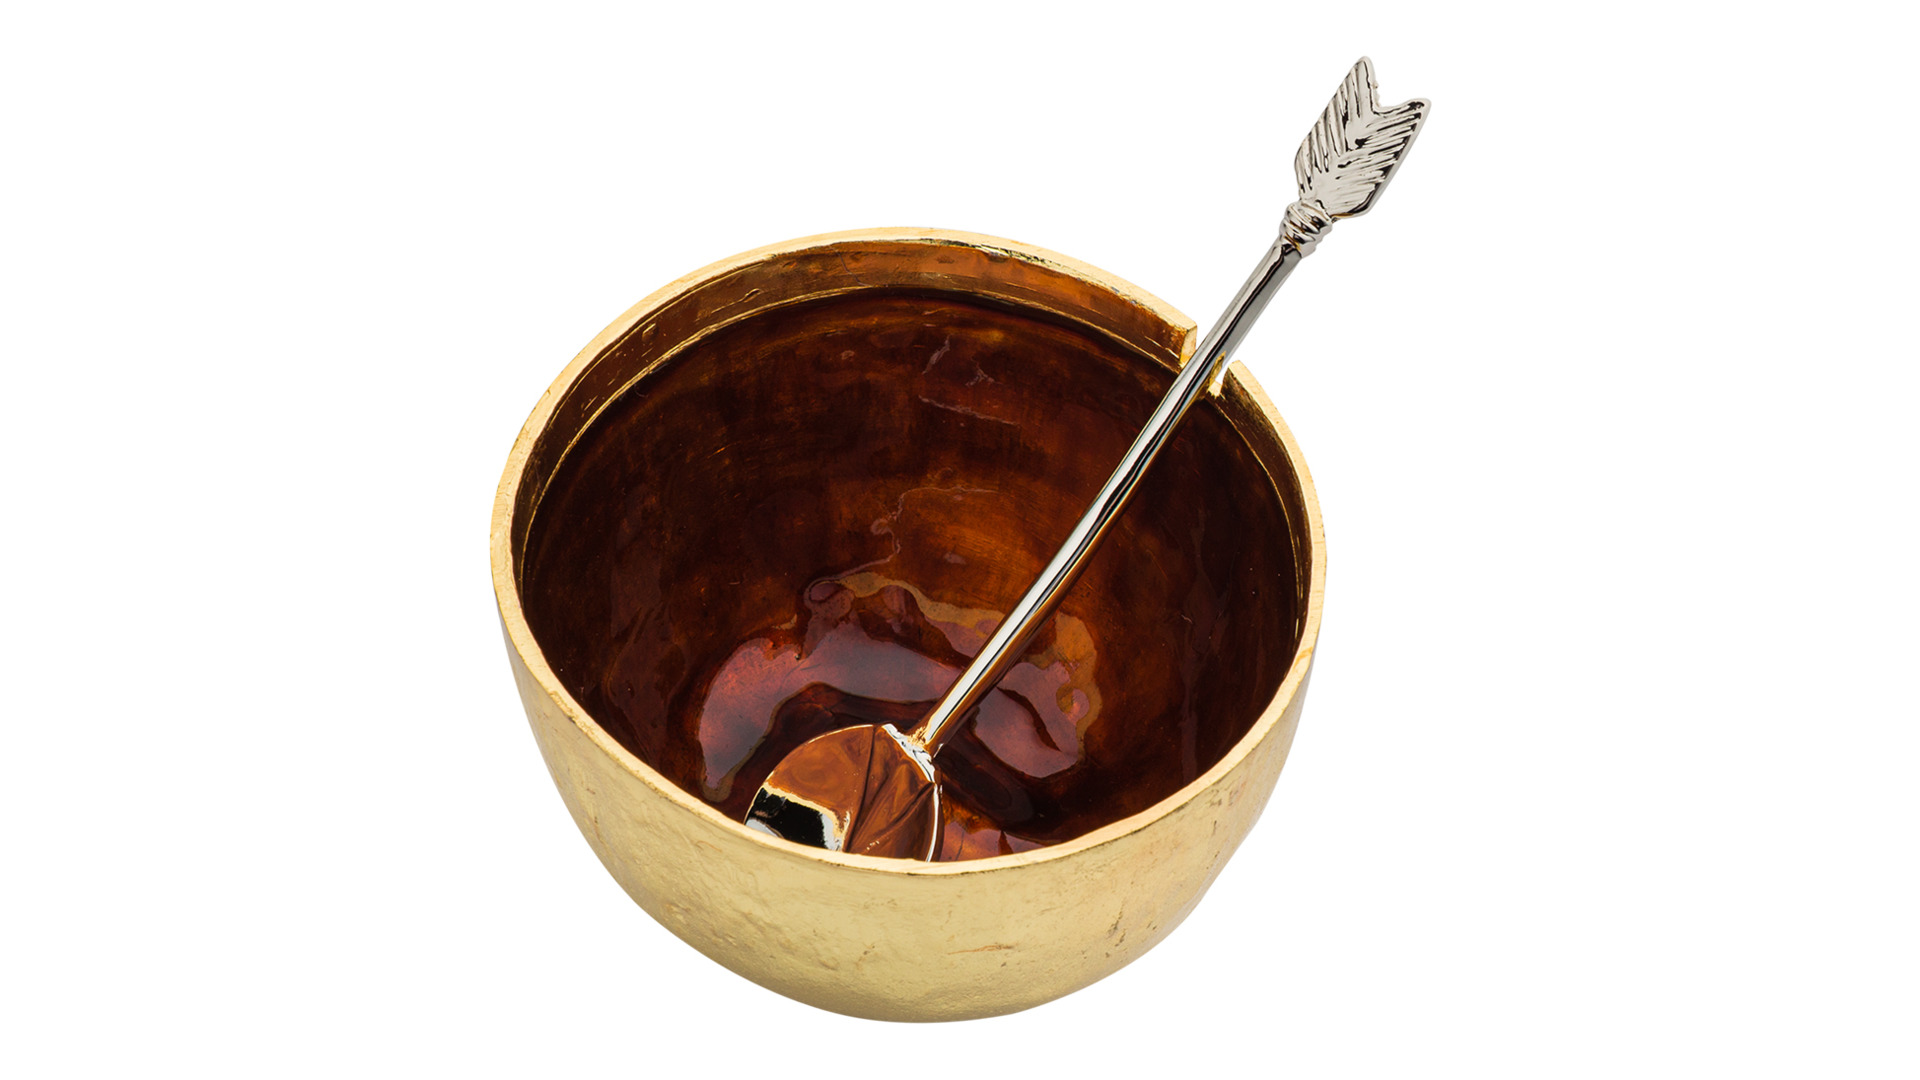 Сахарница с ложкой Michael Aram Золотое яблоко 11 см, сталь нержавеющая, золотистая